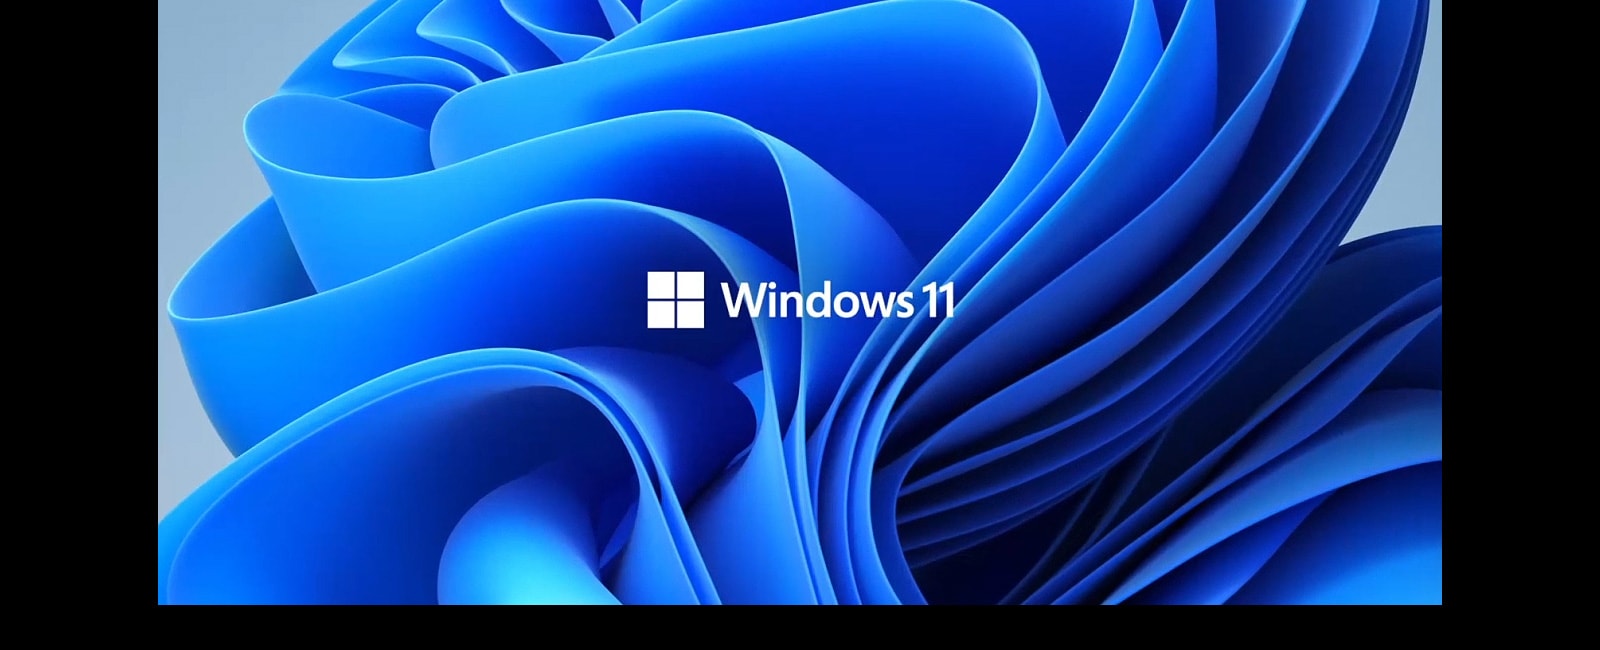 Arată logoul Windows11 și imaginea de fundal.